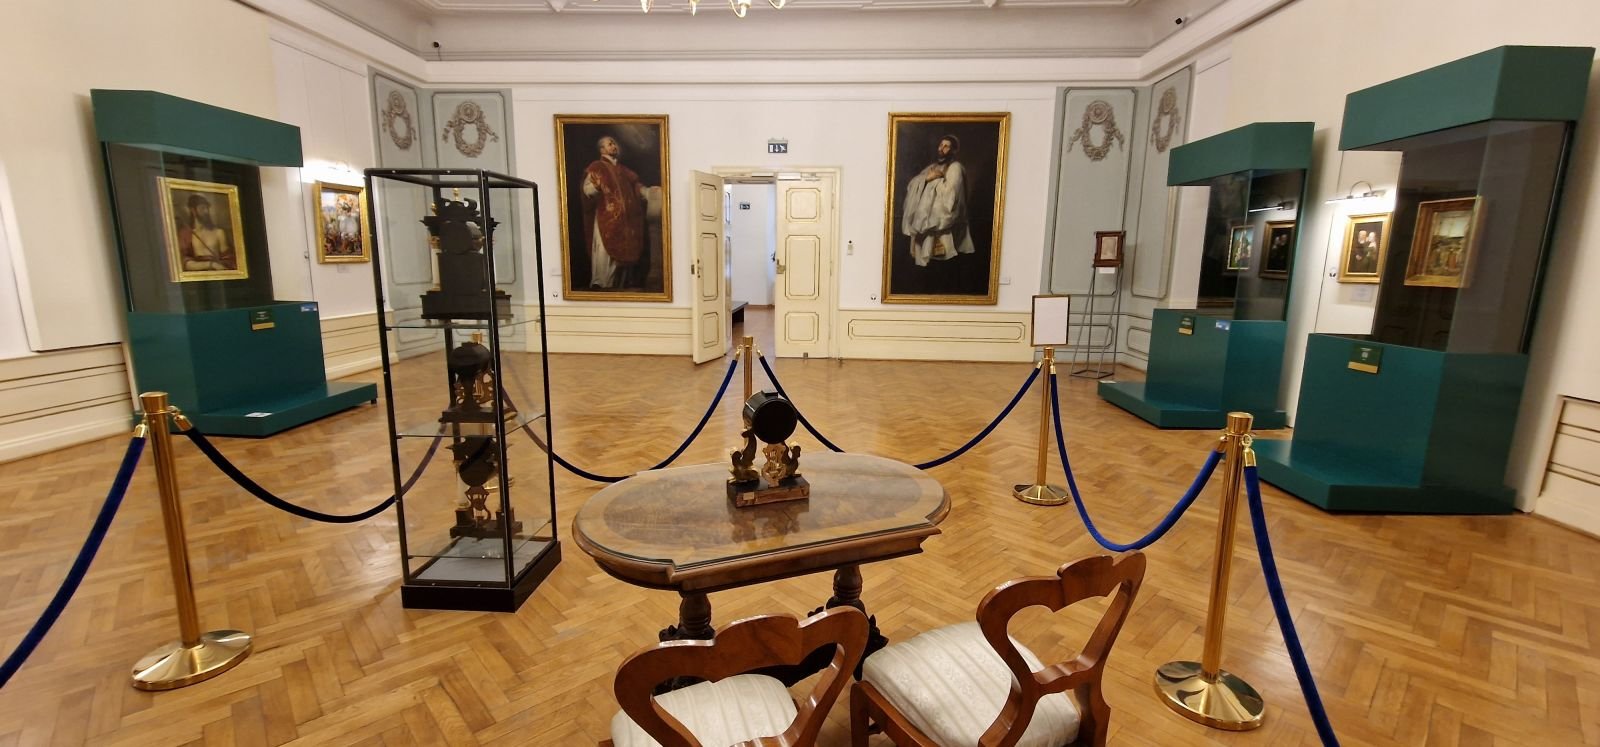  Două capodopere de Rubens vor fi restaurate şi expuse la Iaşi şi Suceava